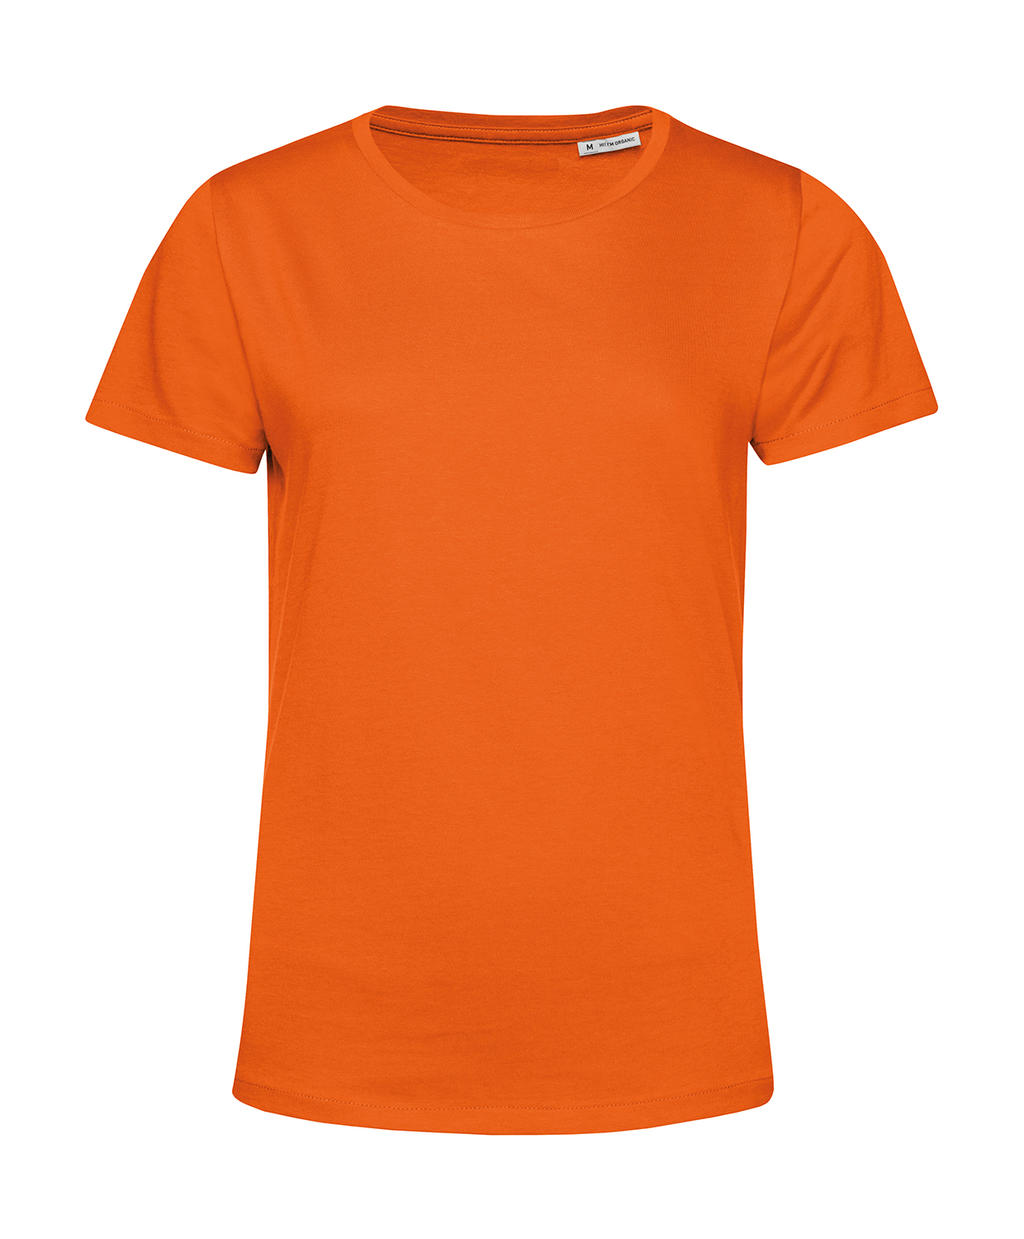 Tričko dámské BC Organic Inspire E150 - oranžové, S